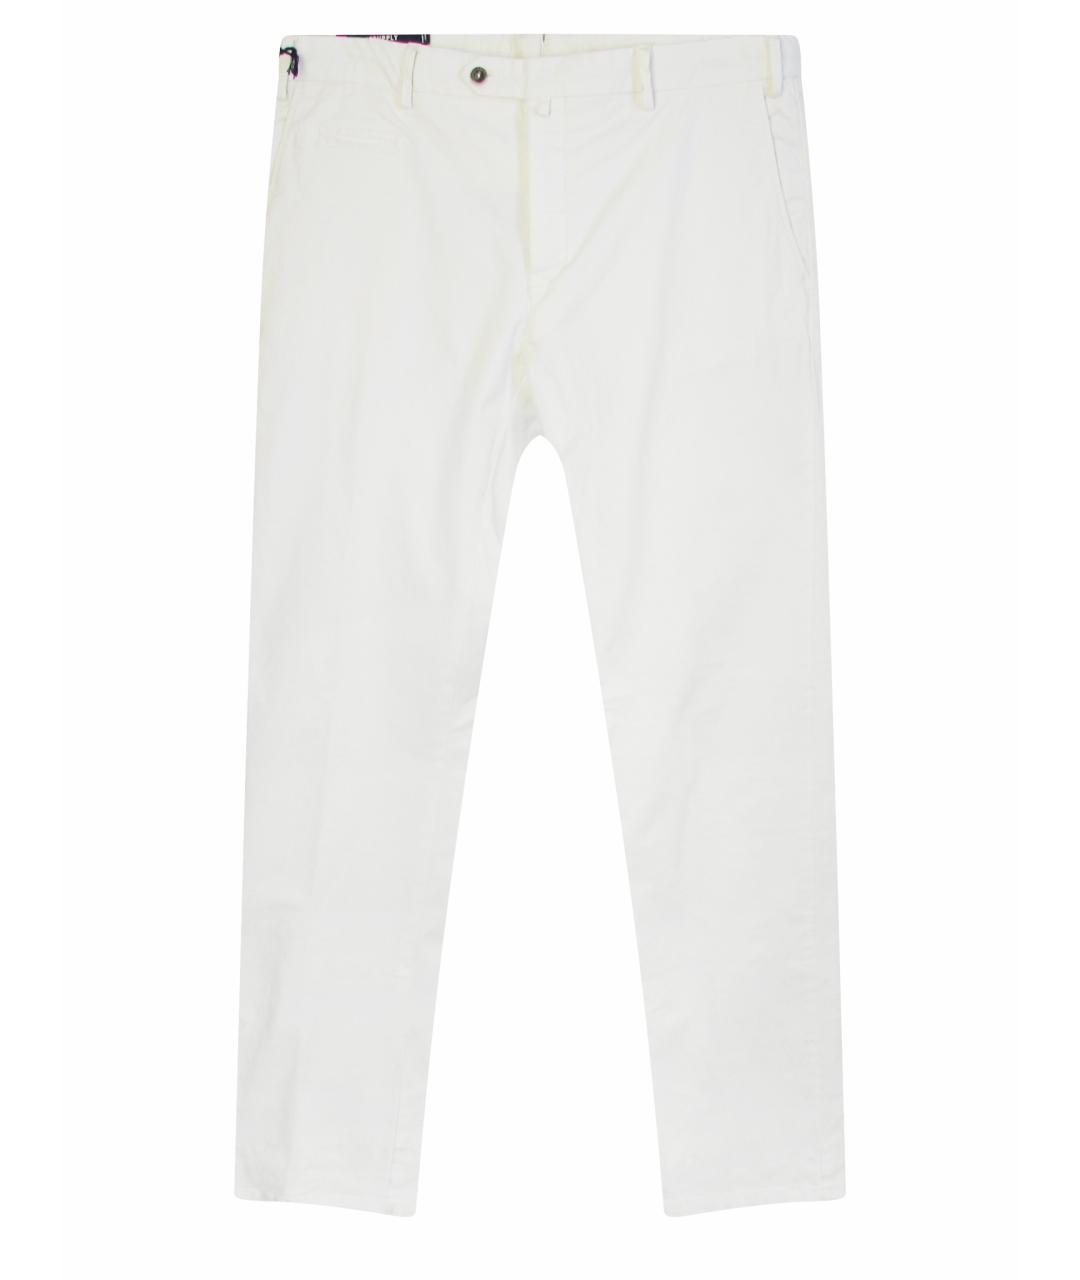 SUITSUPPLY Белые хлопковые классические брюки, фото 1